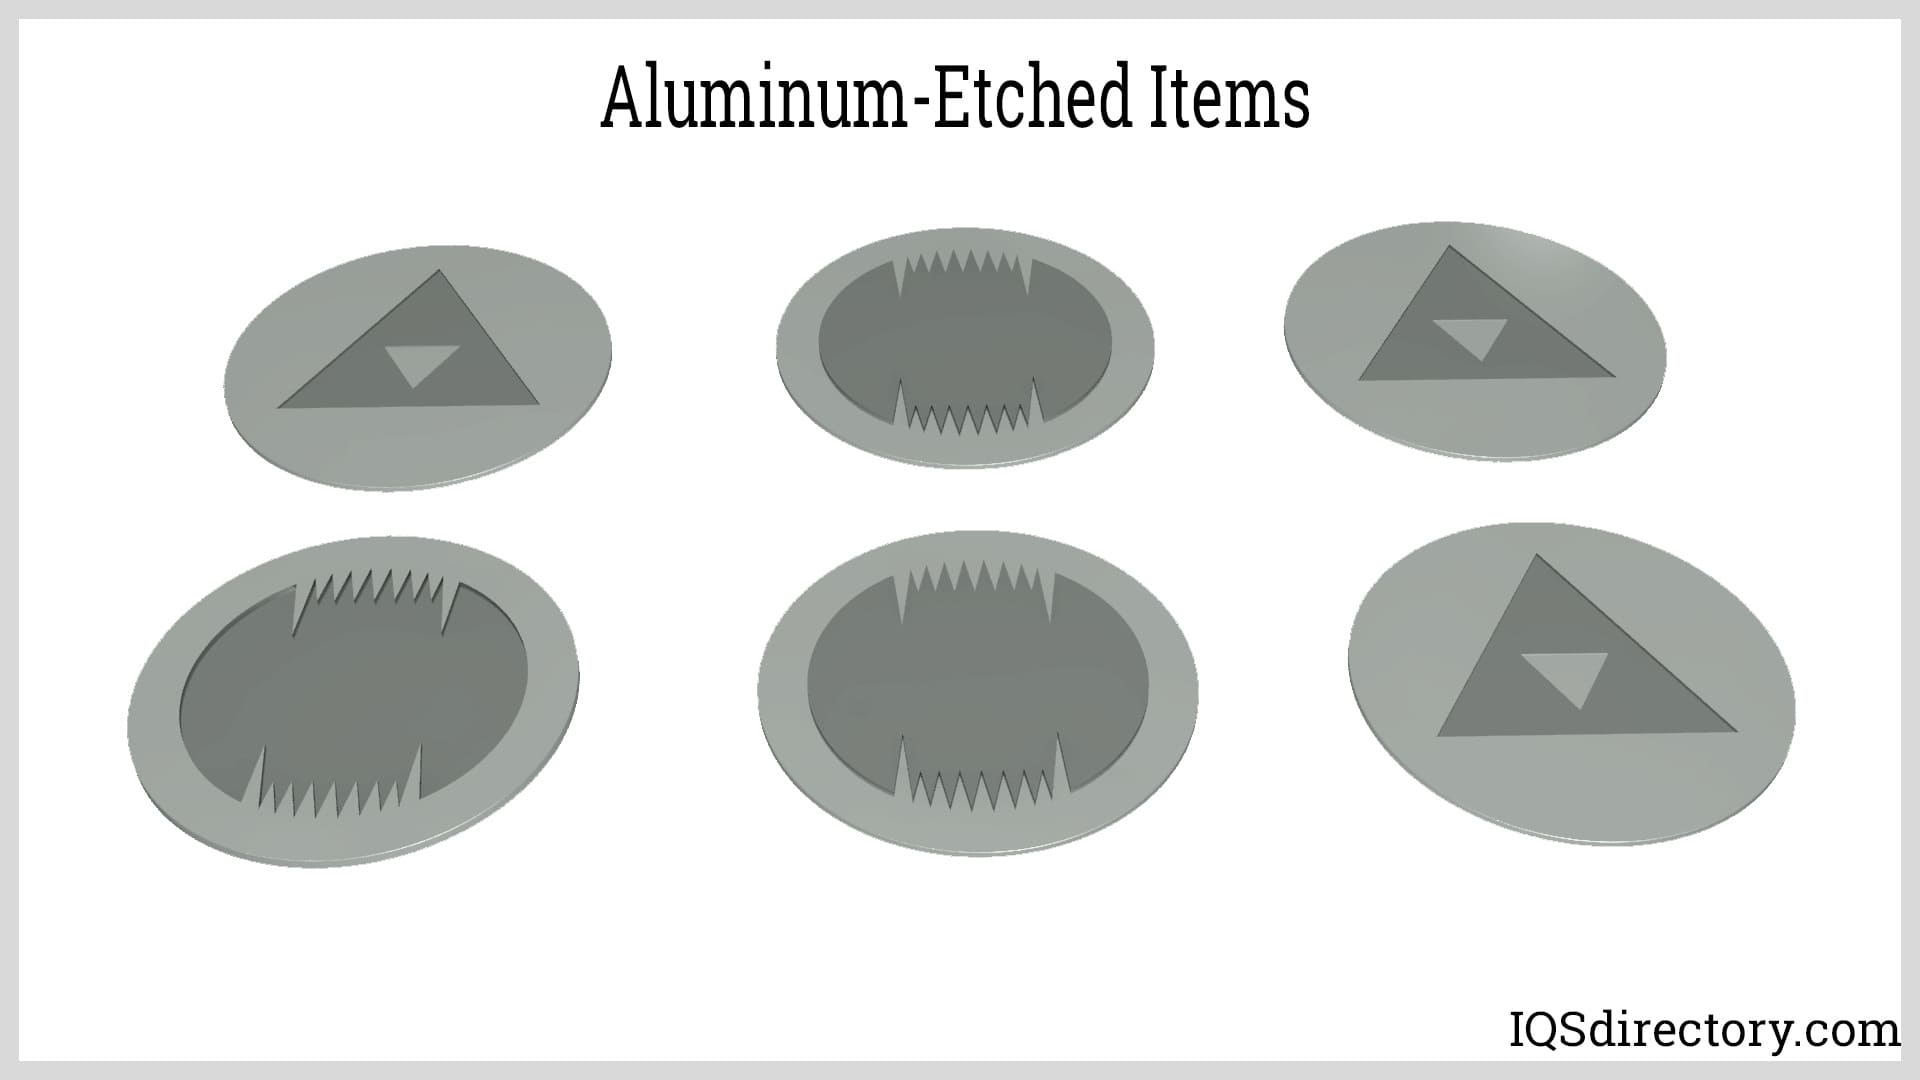 Aluminum-Etched Items